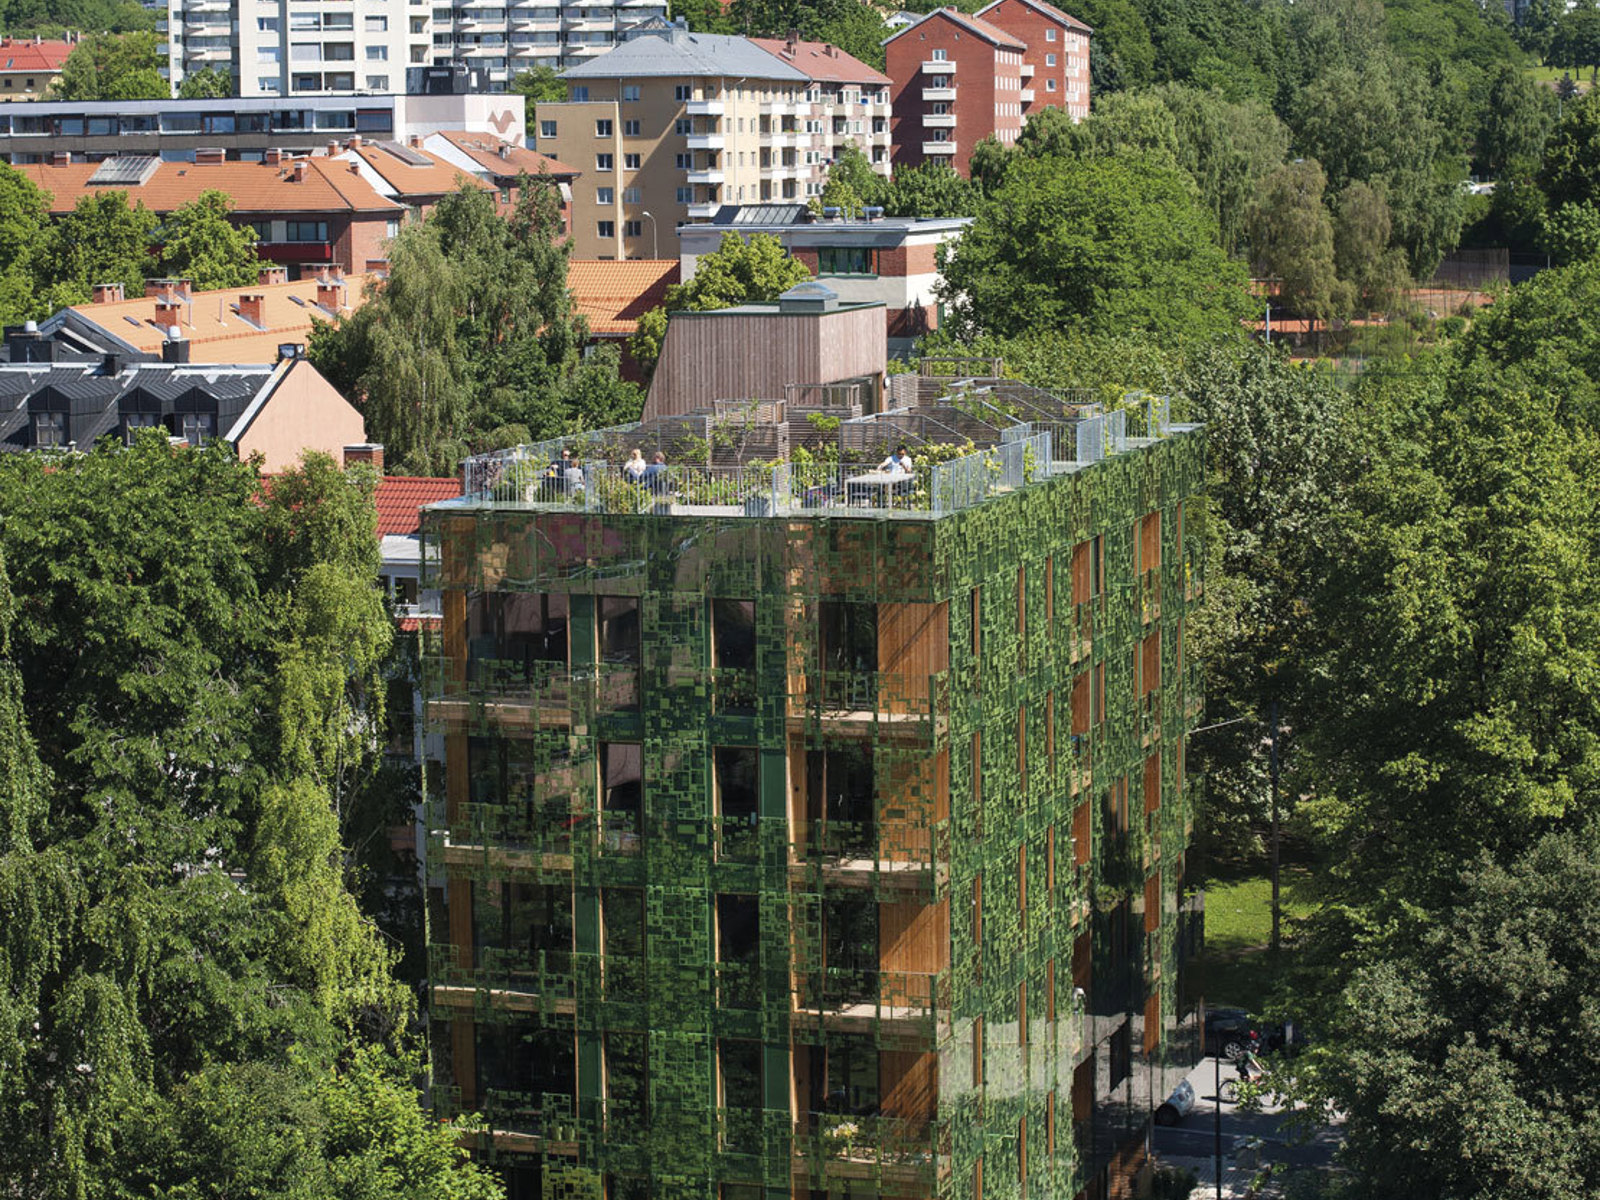 Grønn boligblokk i en kontekst med flere trær, by i bakgrunnen. Foto.